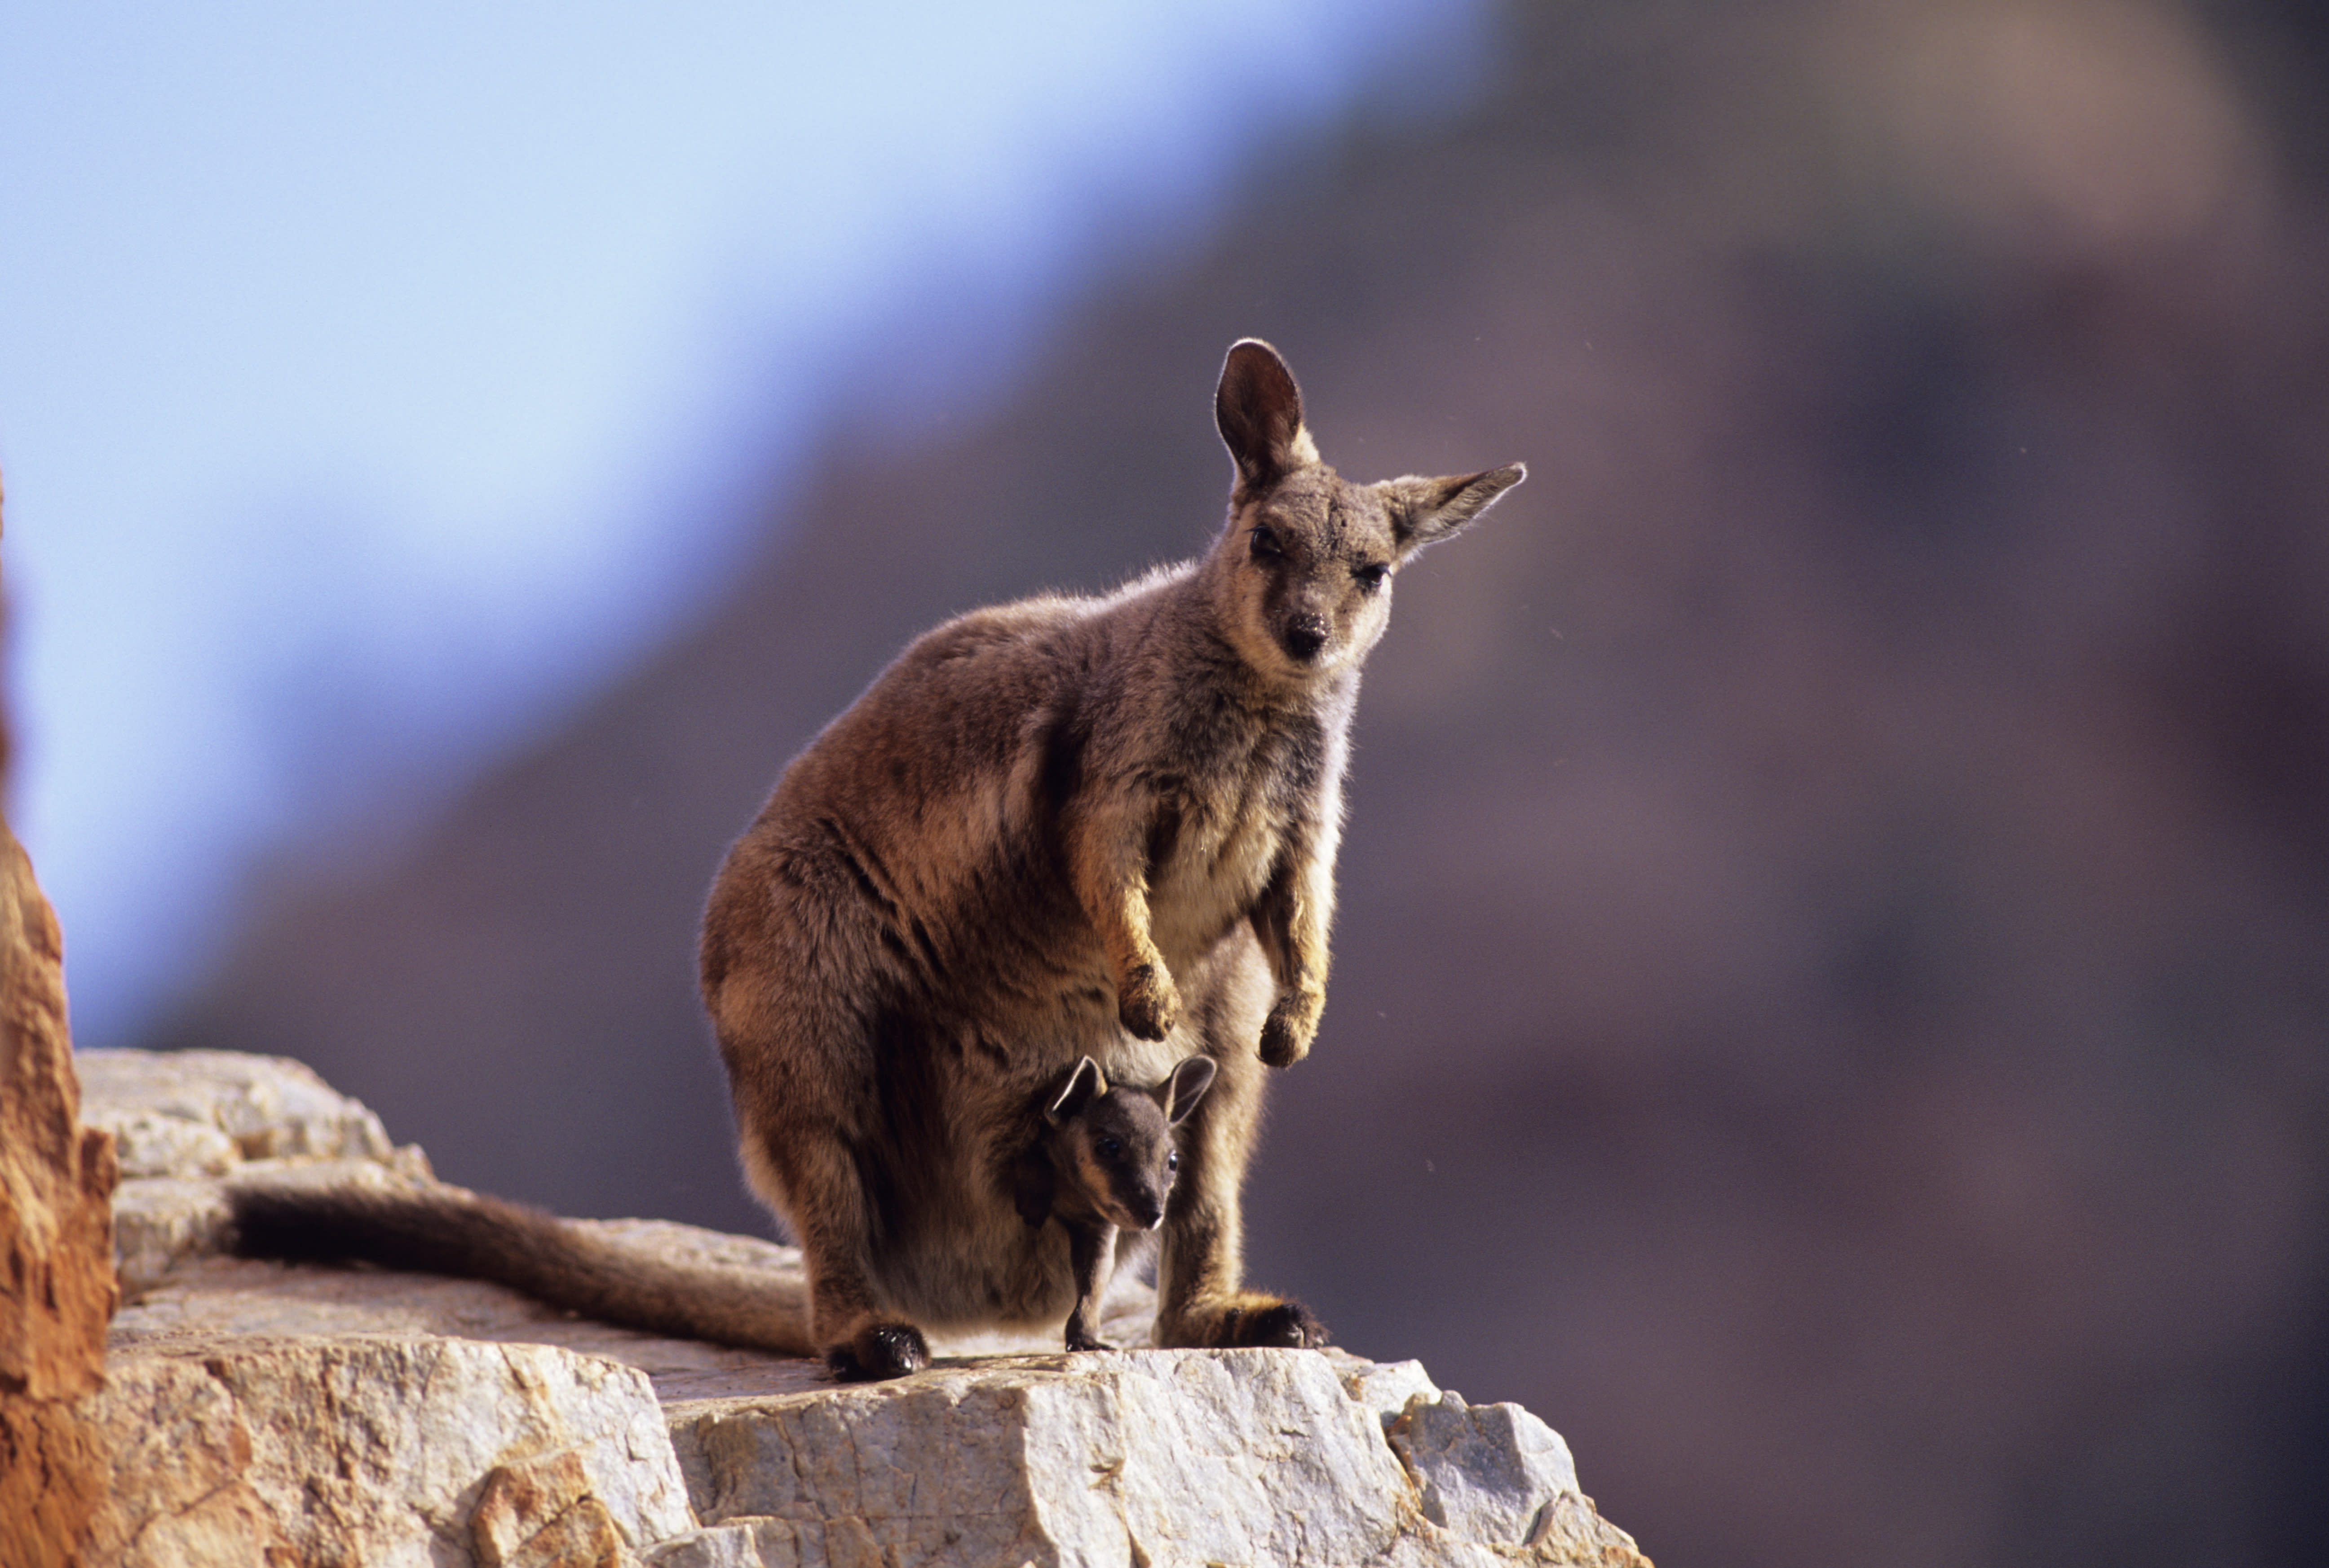 Rock-wallaby rescue